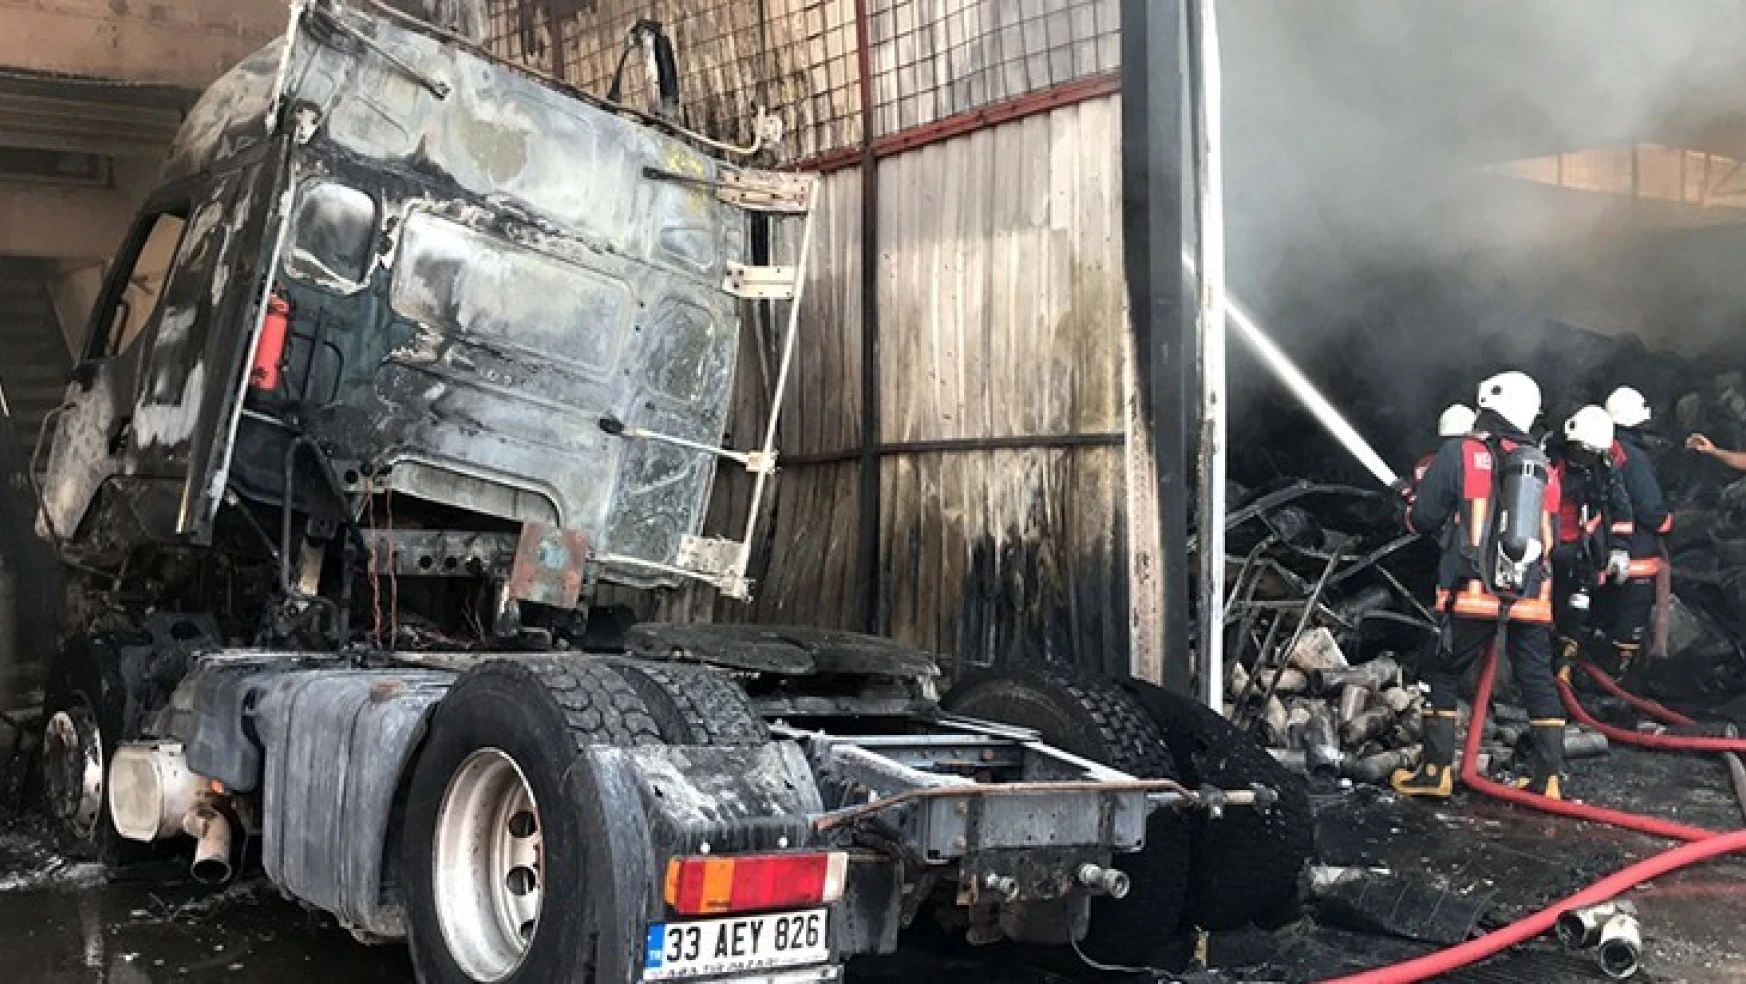 Sanayi sitesinde çıkan yangında 4 iş yeri ve 4 araçta hasar oluştu